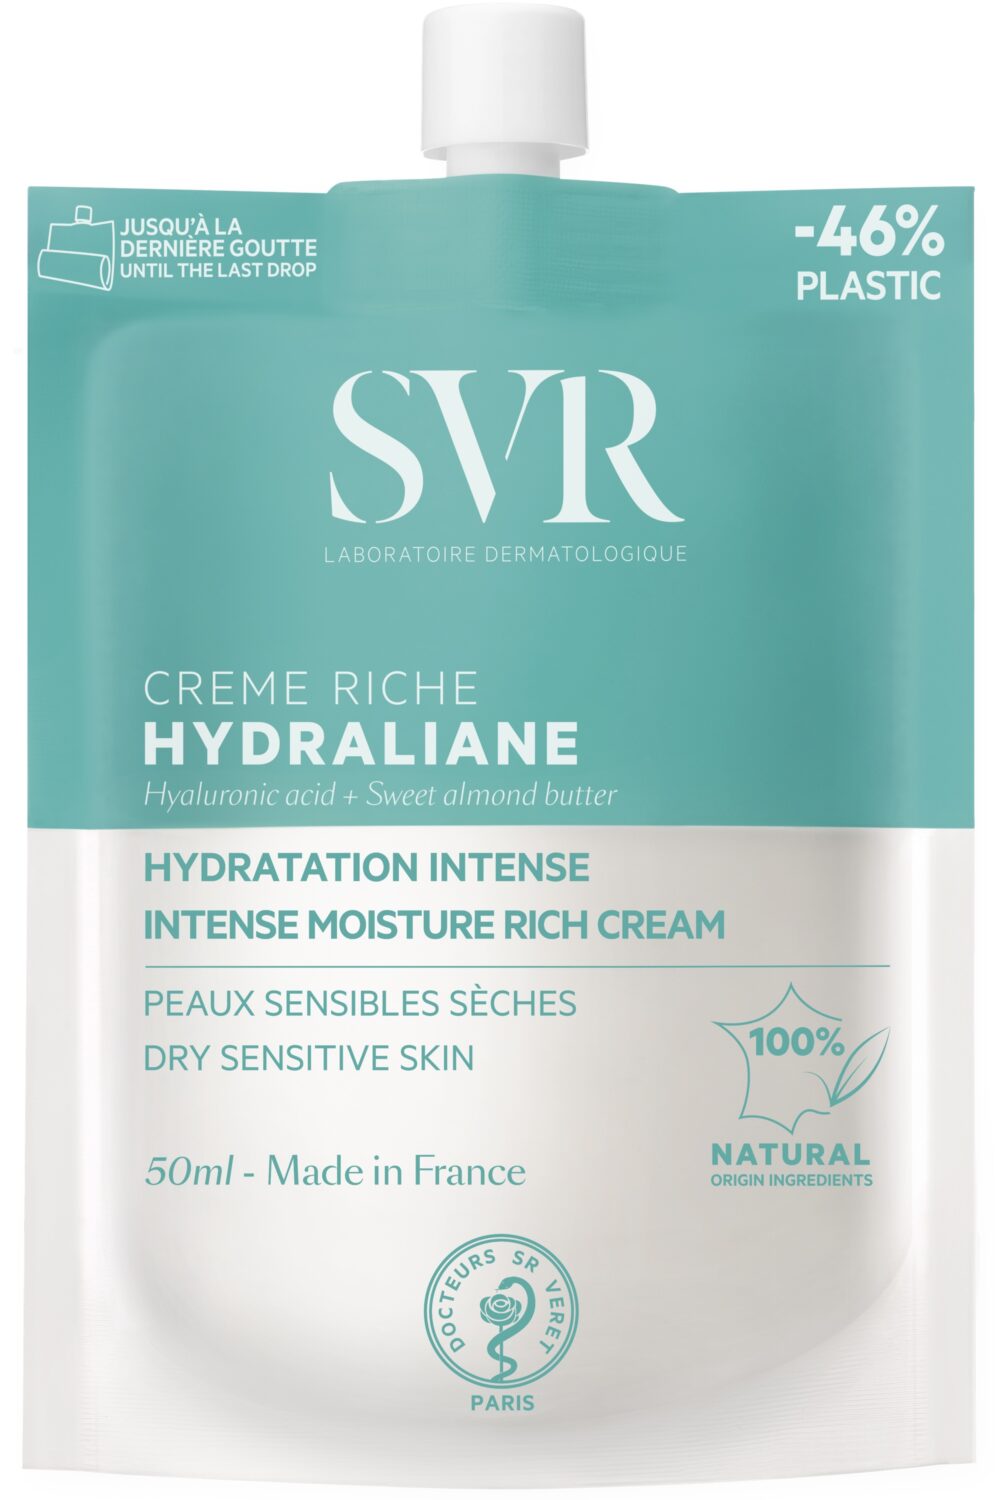 SVR - Crème riche hydratante Hydraline